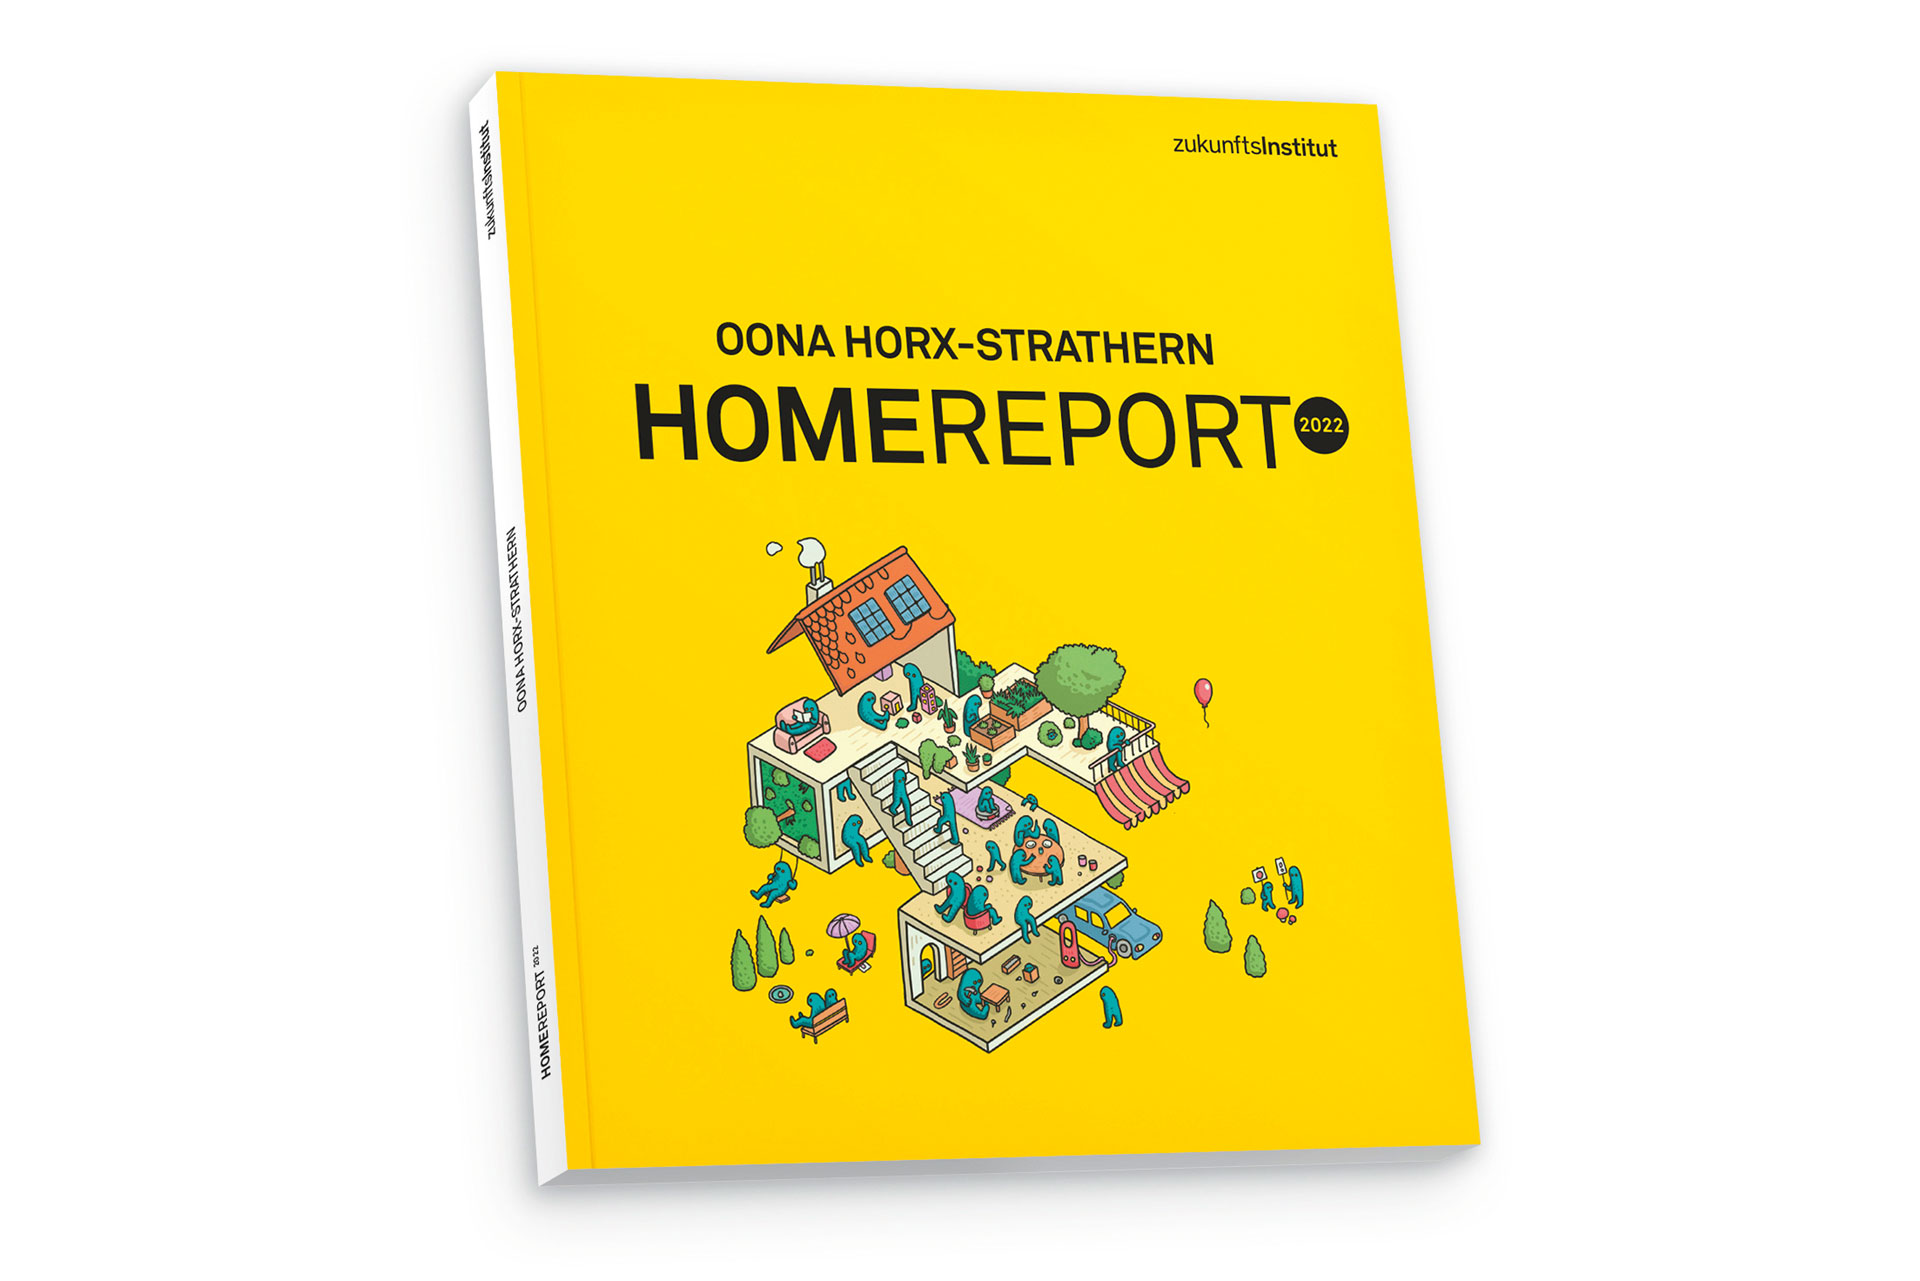 Der Home Report 2022 erschien im November 2021. Er umfasst 136 Seiten und kostet 150 Euro.